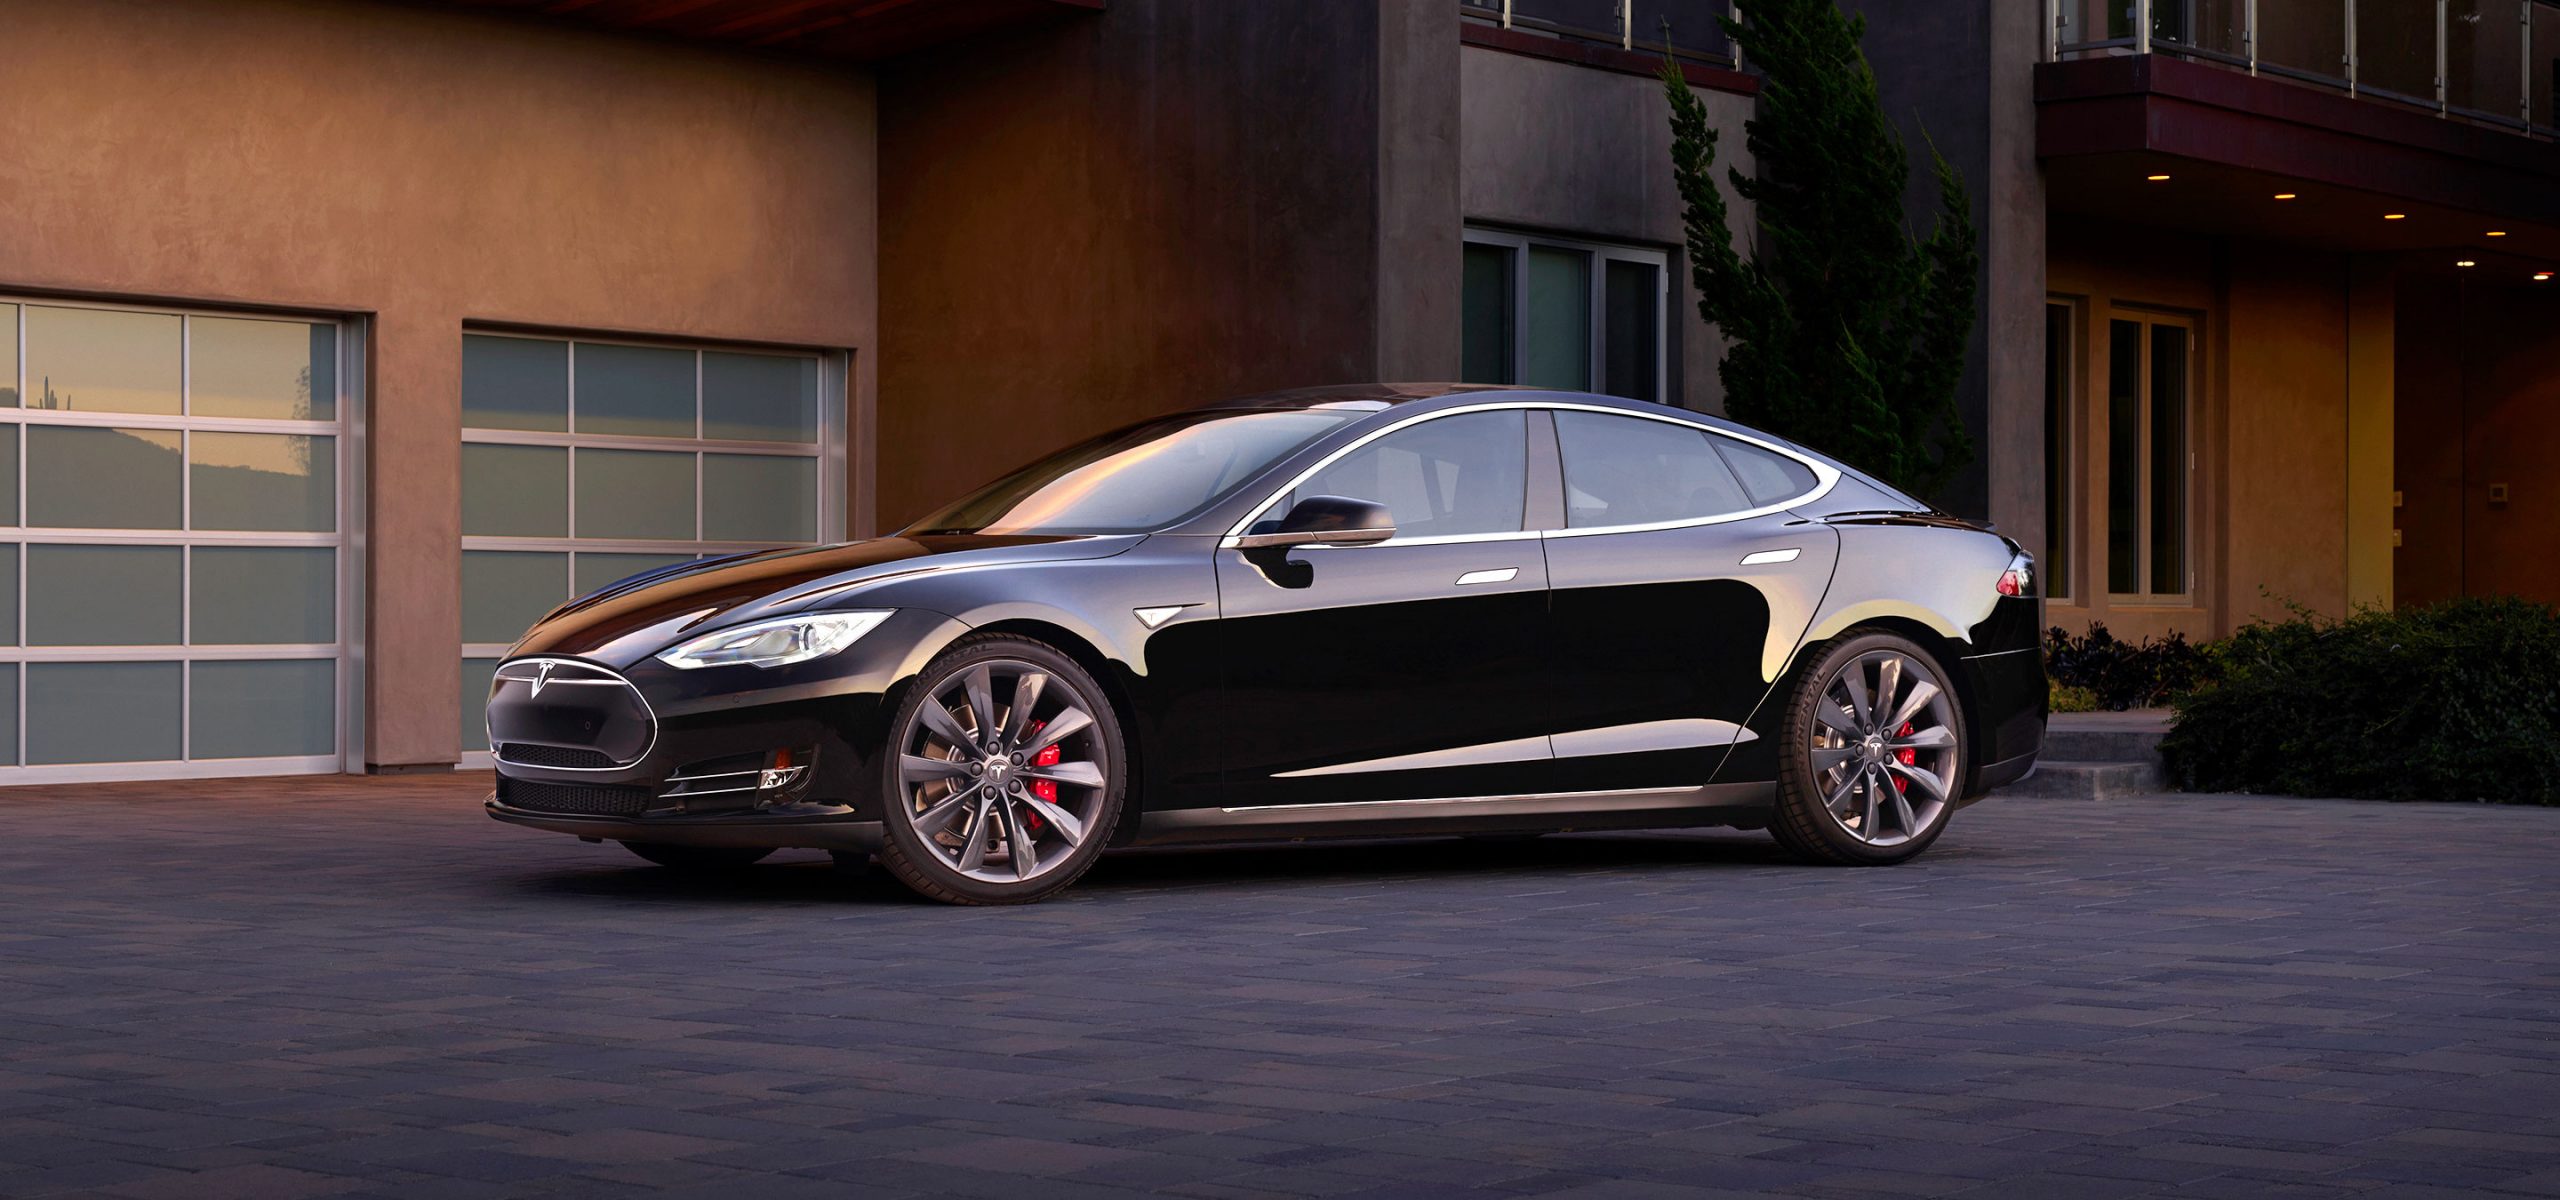 Tesla sõidukitehnika asepresidendi võtab tööle Apple [atualizado: mais um]